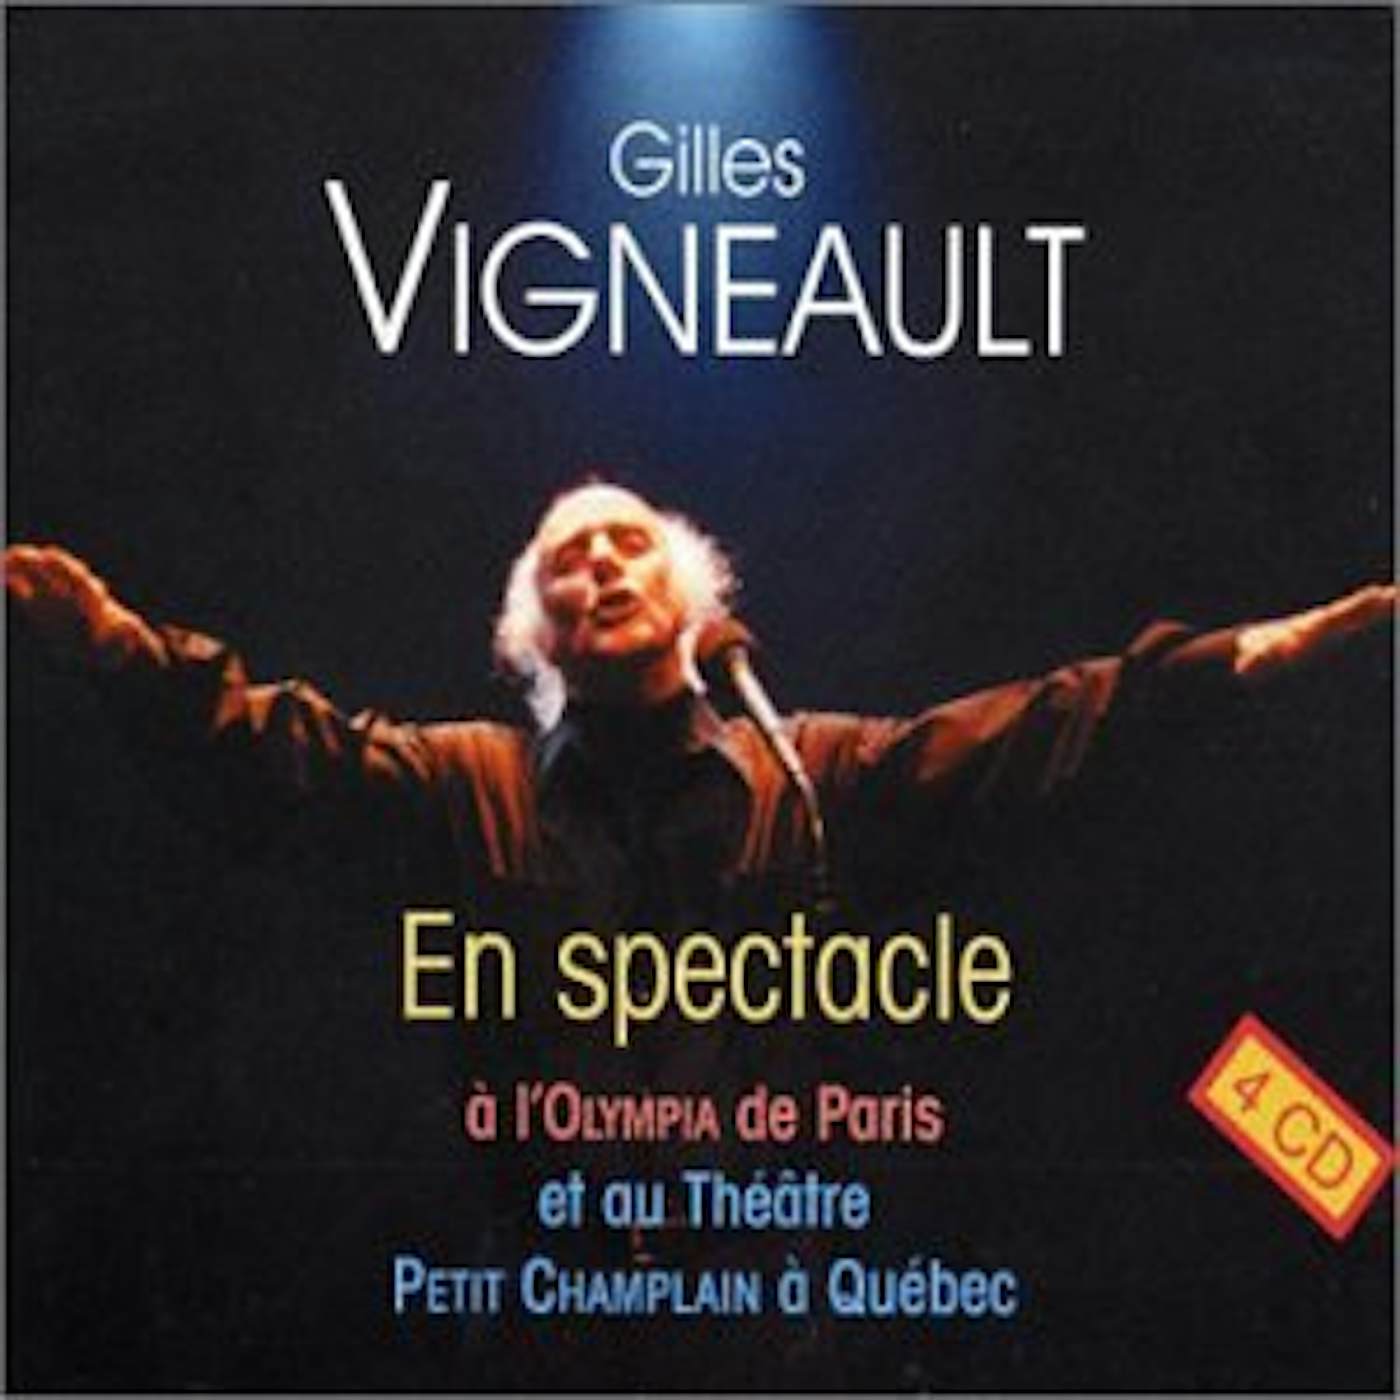 Gilles Vigneault 40 ANS DE SPECTACLE CD